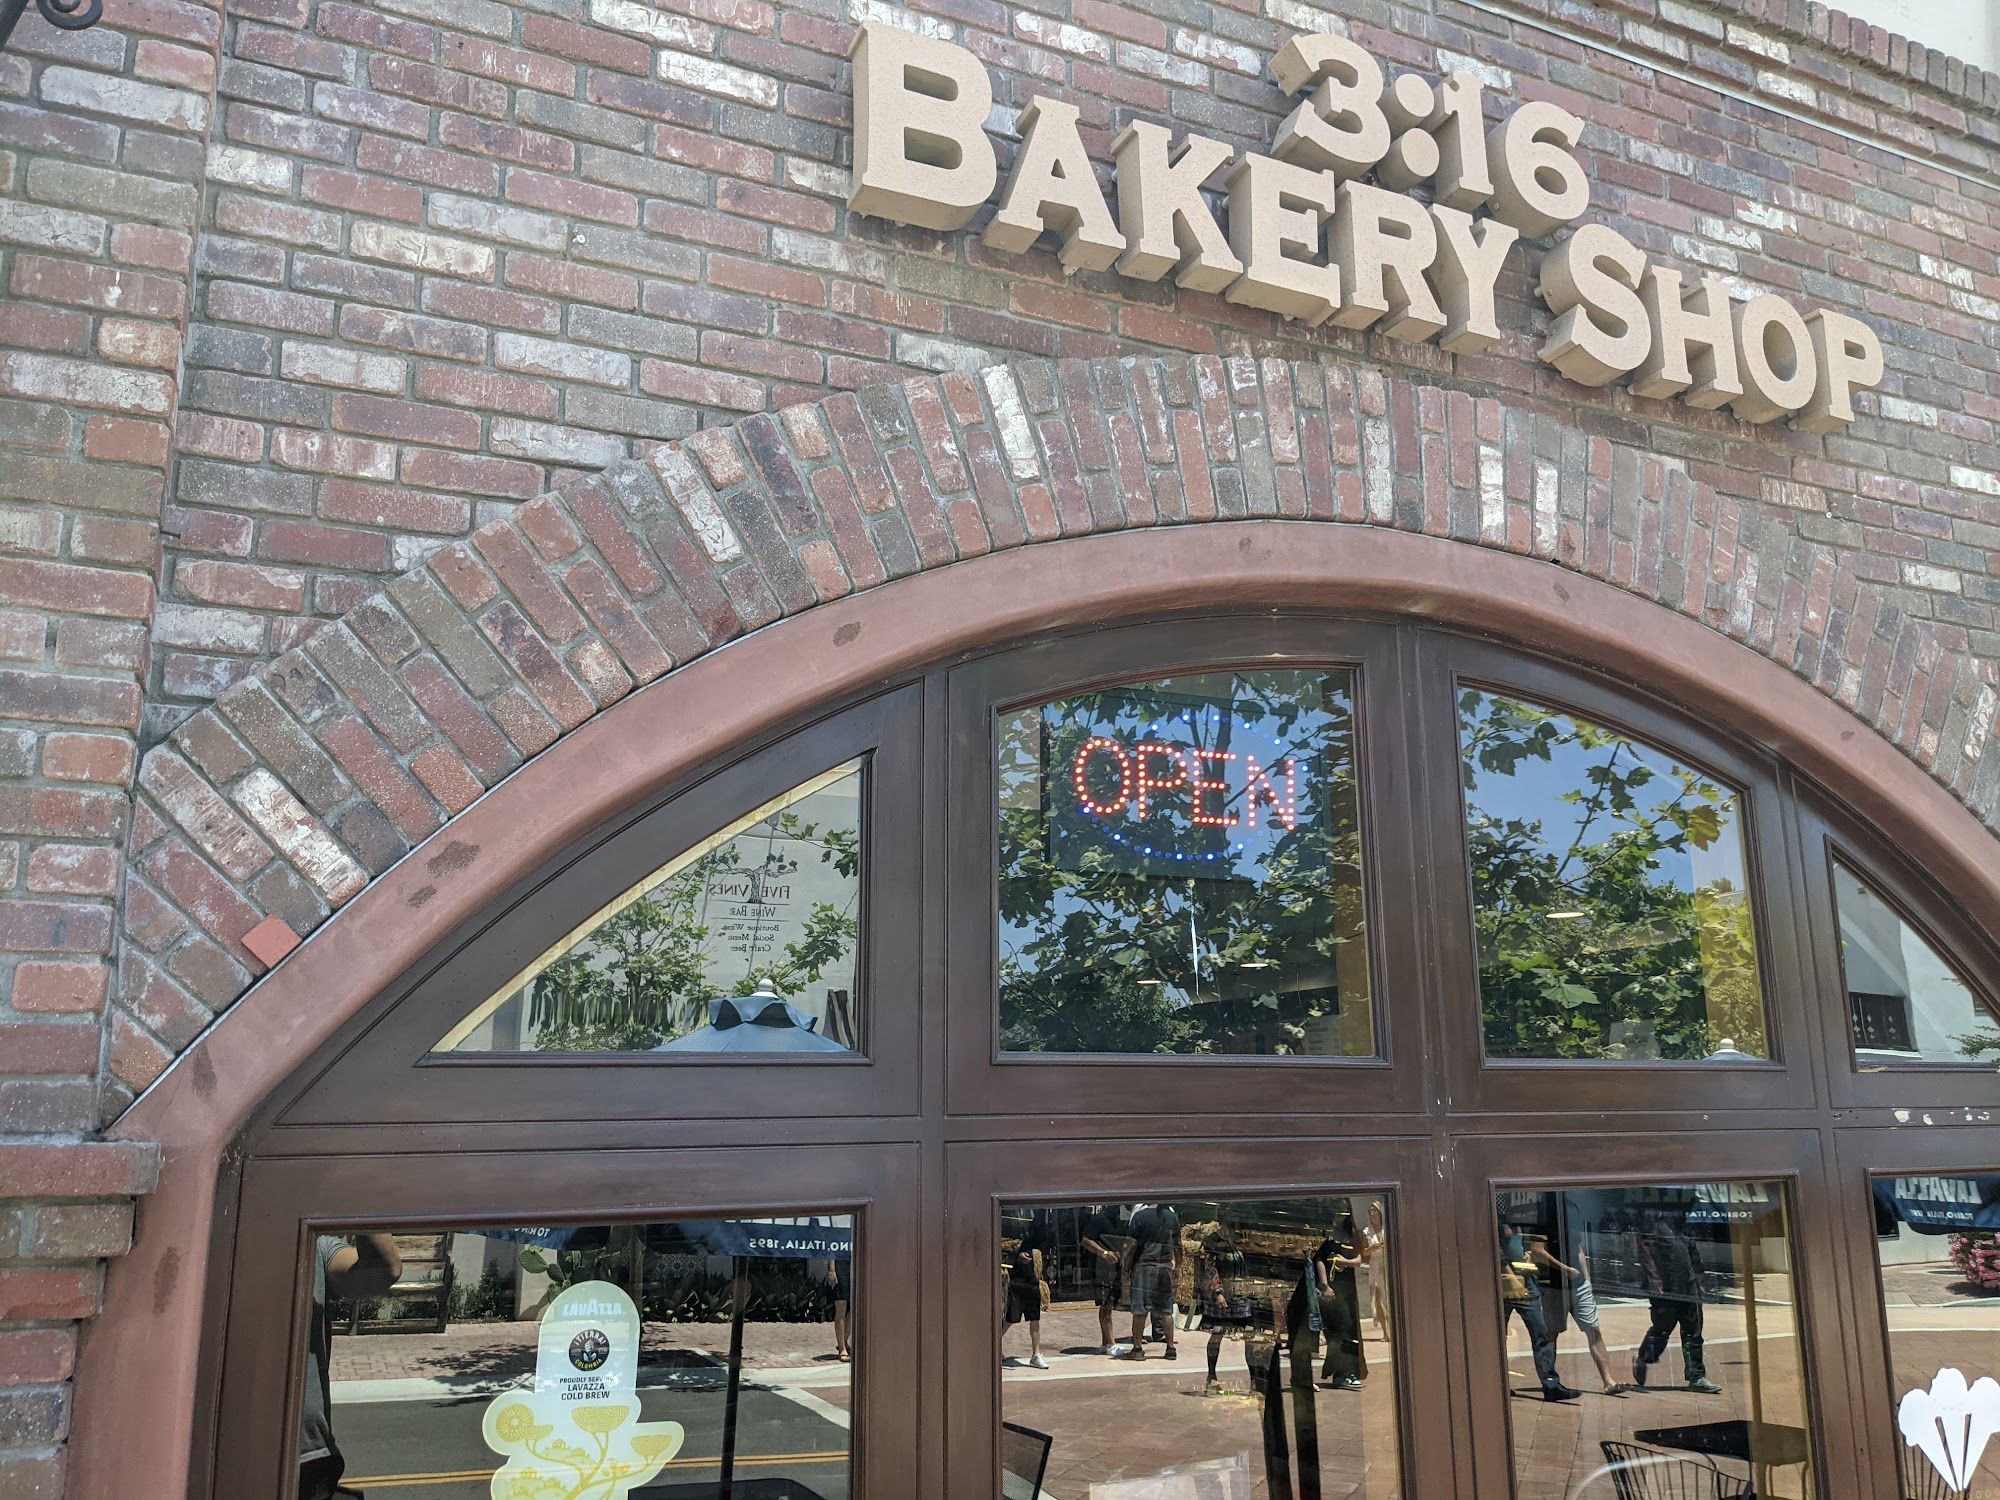 3:16 Bakery Shop